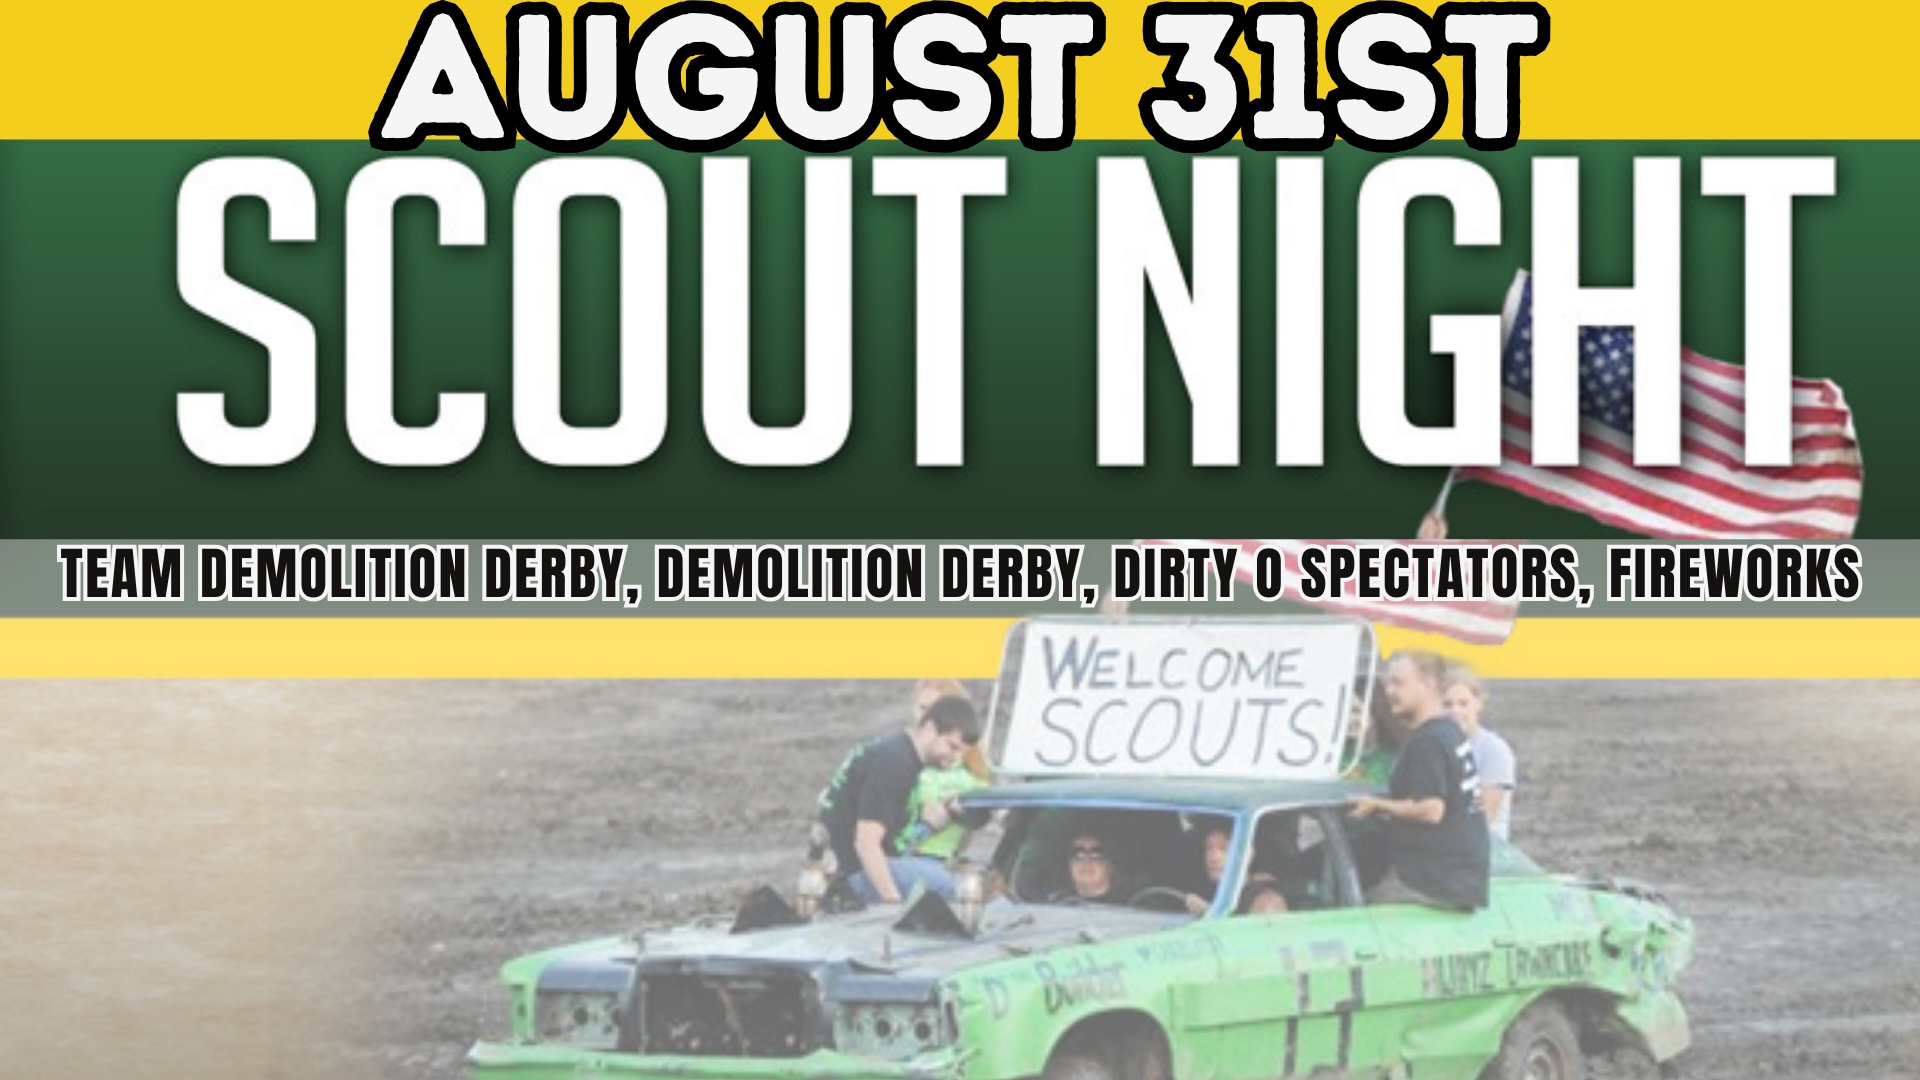 Team Demo's/ Demolition Derby Scout Night!